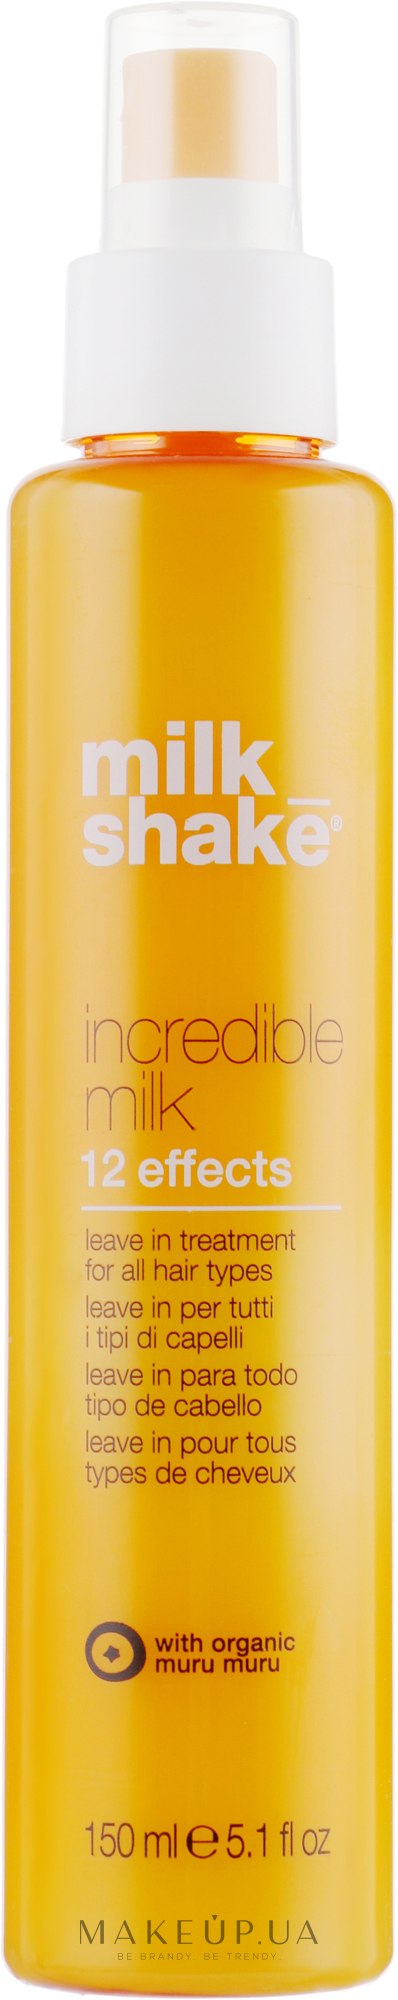 Несмываемая маска-спрей для волос с 12 активными эффектами - Milk_Shake Incredible Milk — фото 150ml